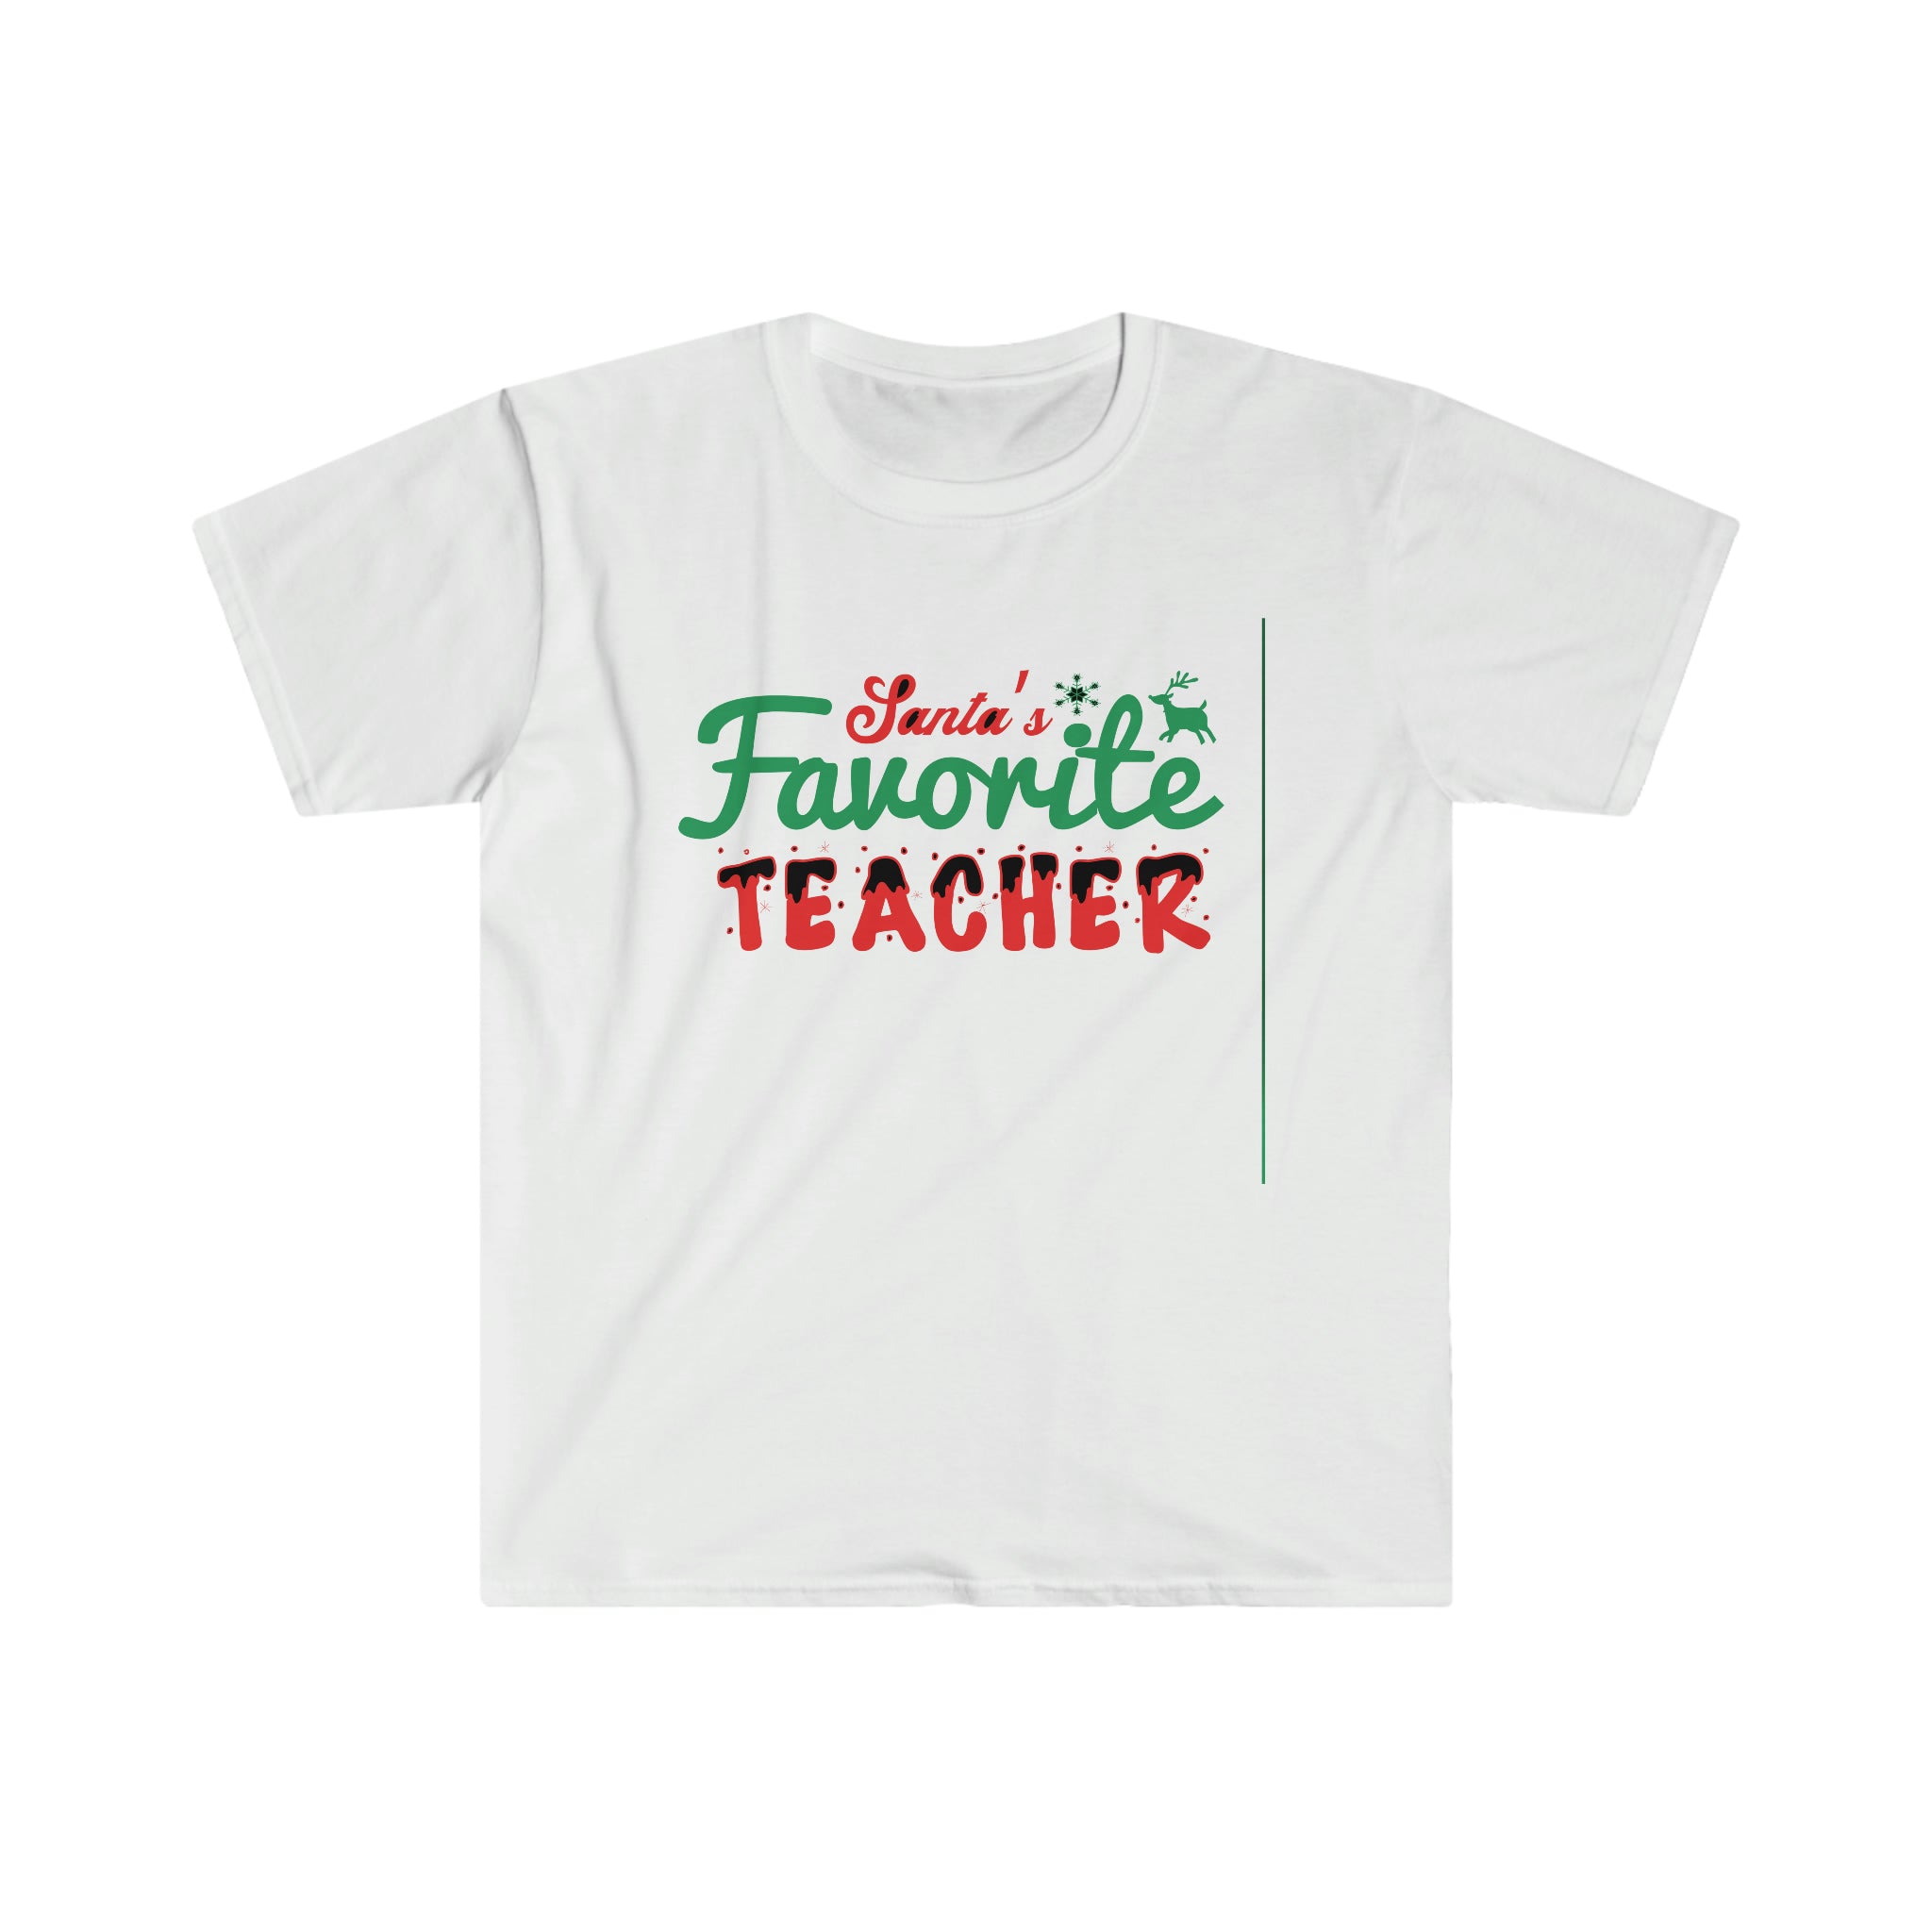 A Santa's Favorite Teacher T-Shirt.